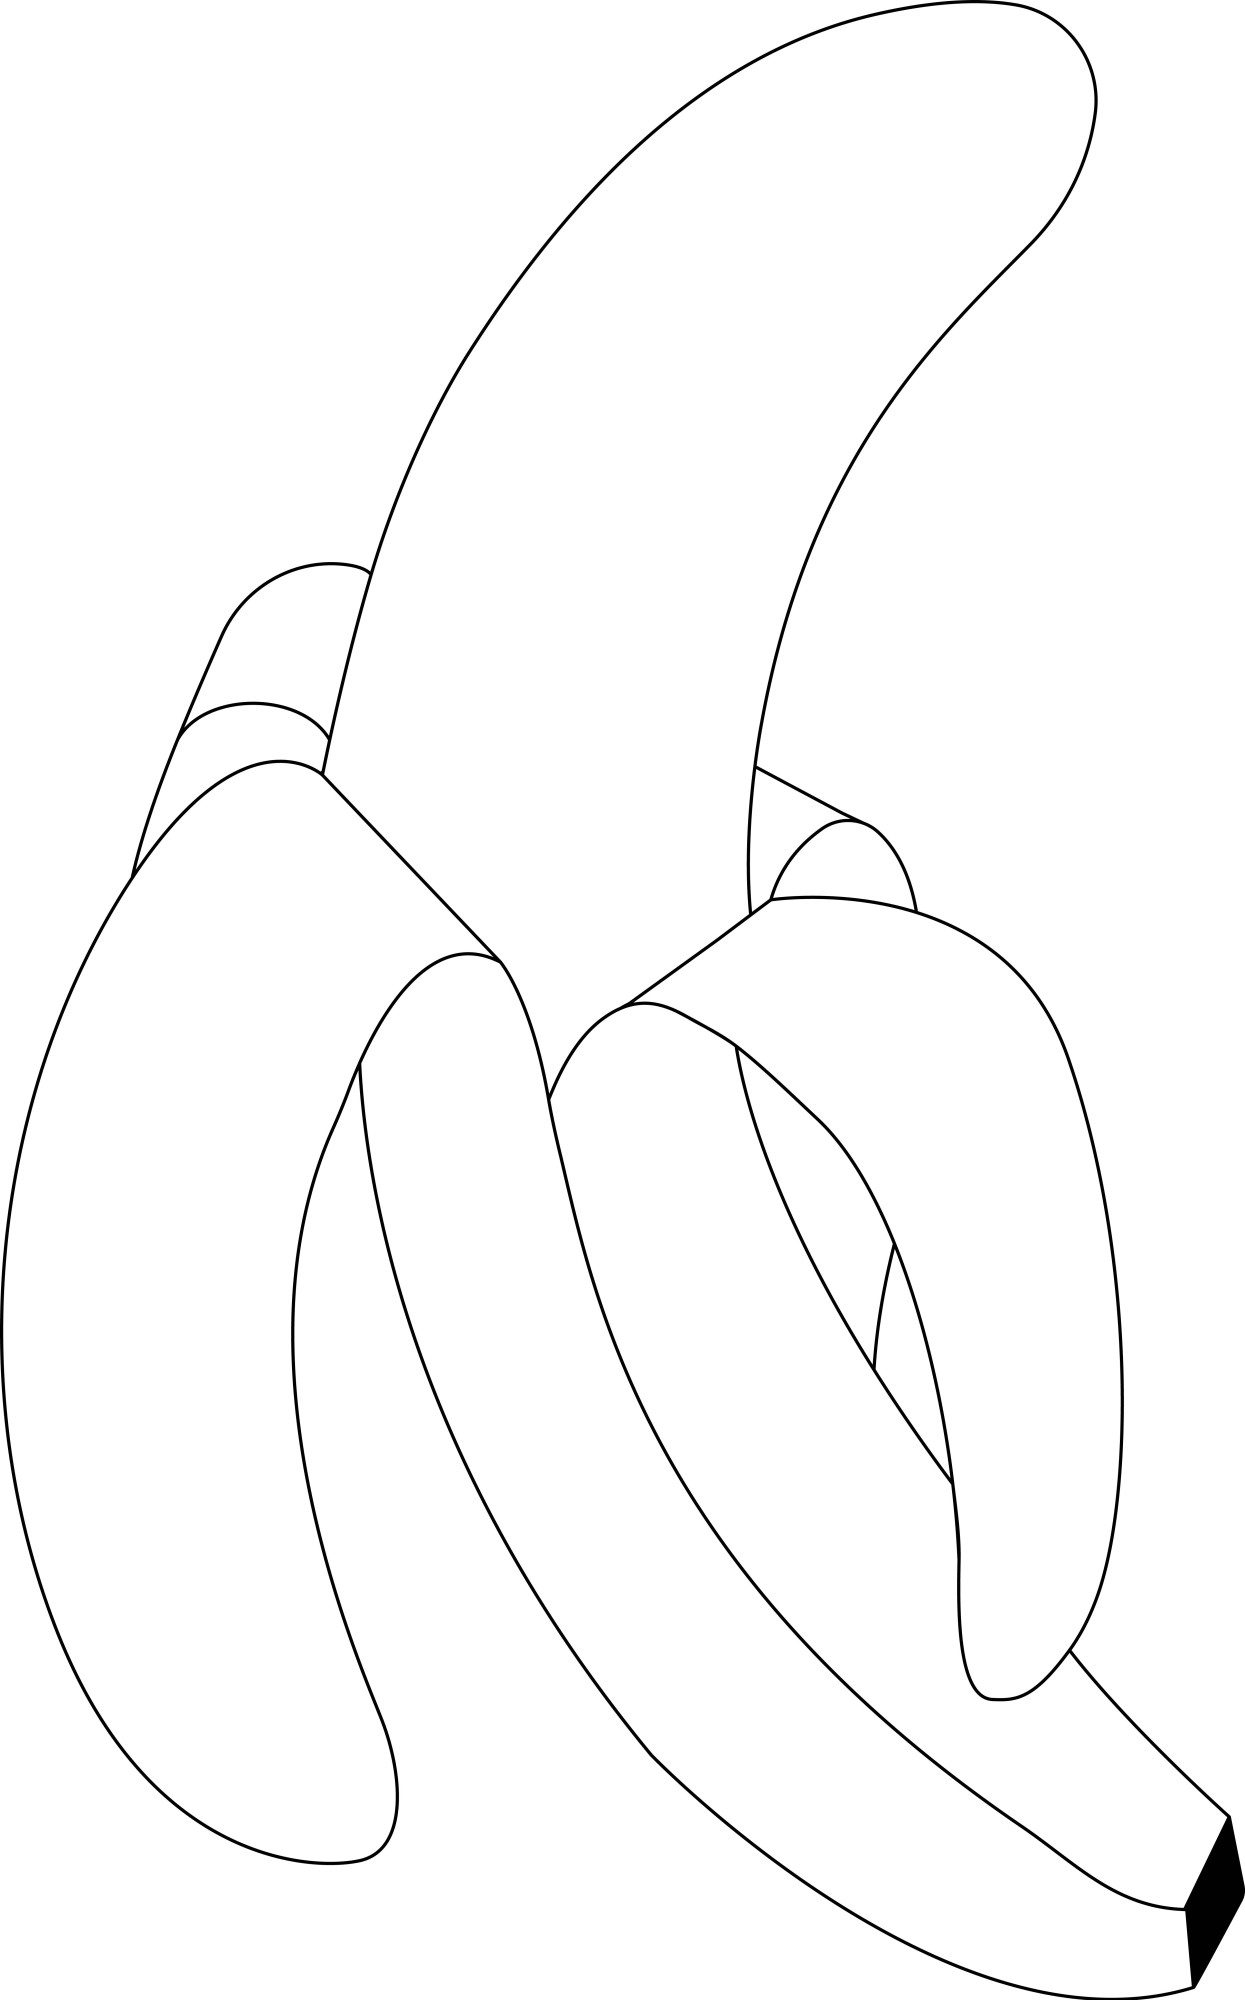 Раскраска для детей: вкусный банан с кожурой